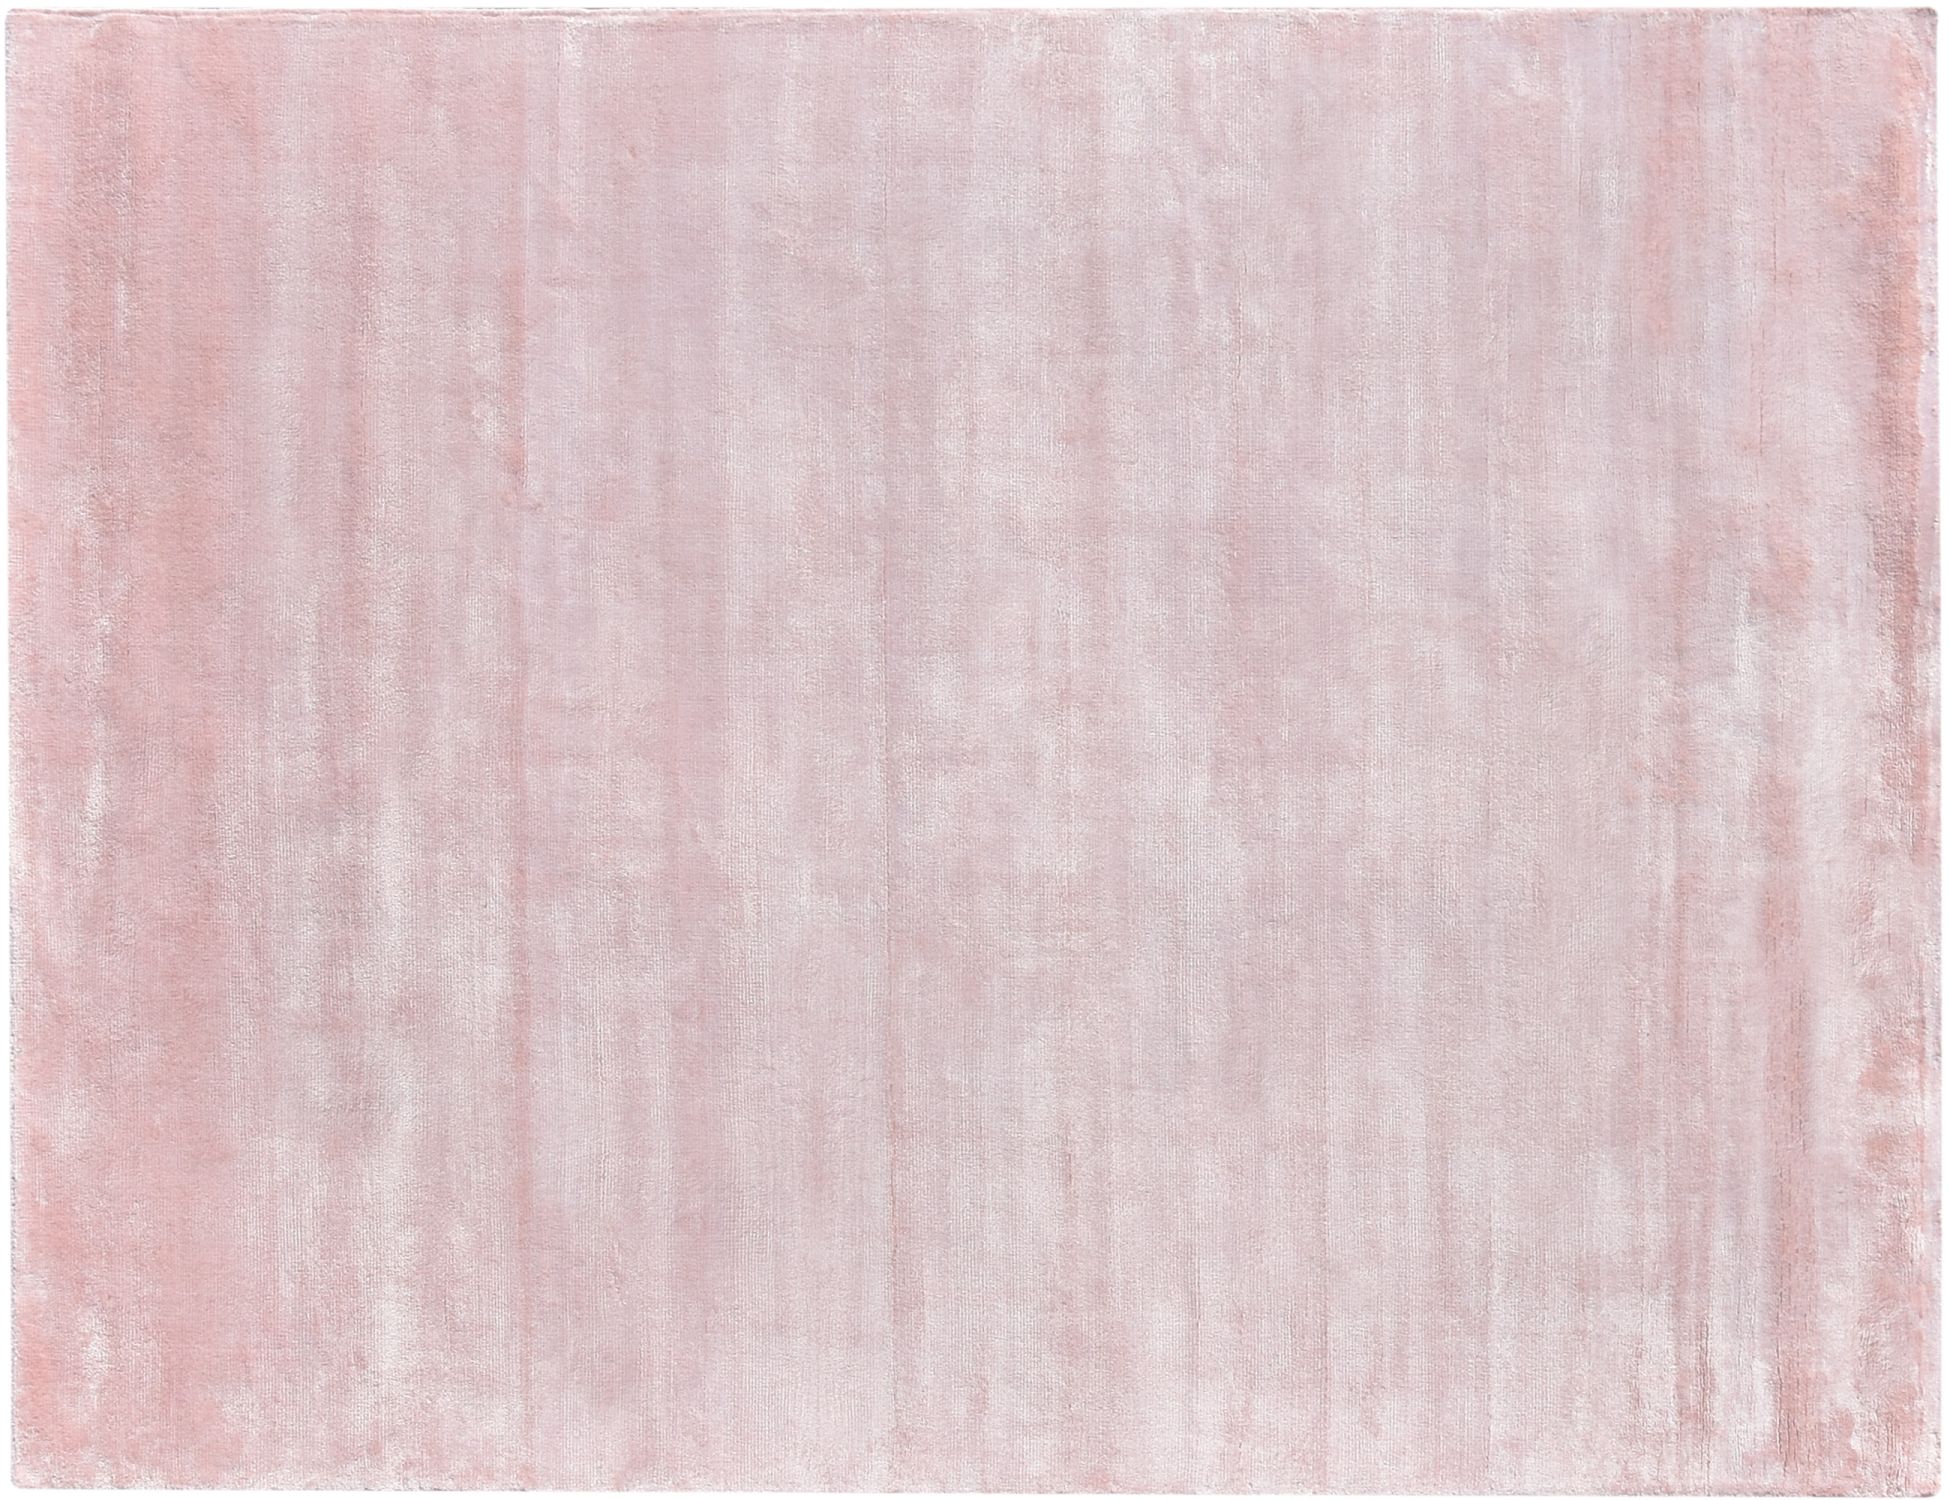 Cozy  Ροζ <br/>200 x 100 cm